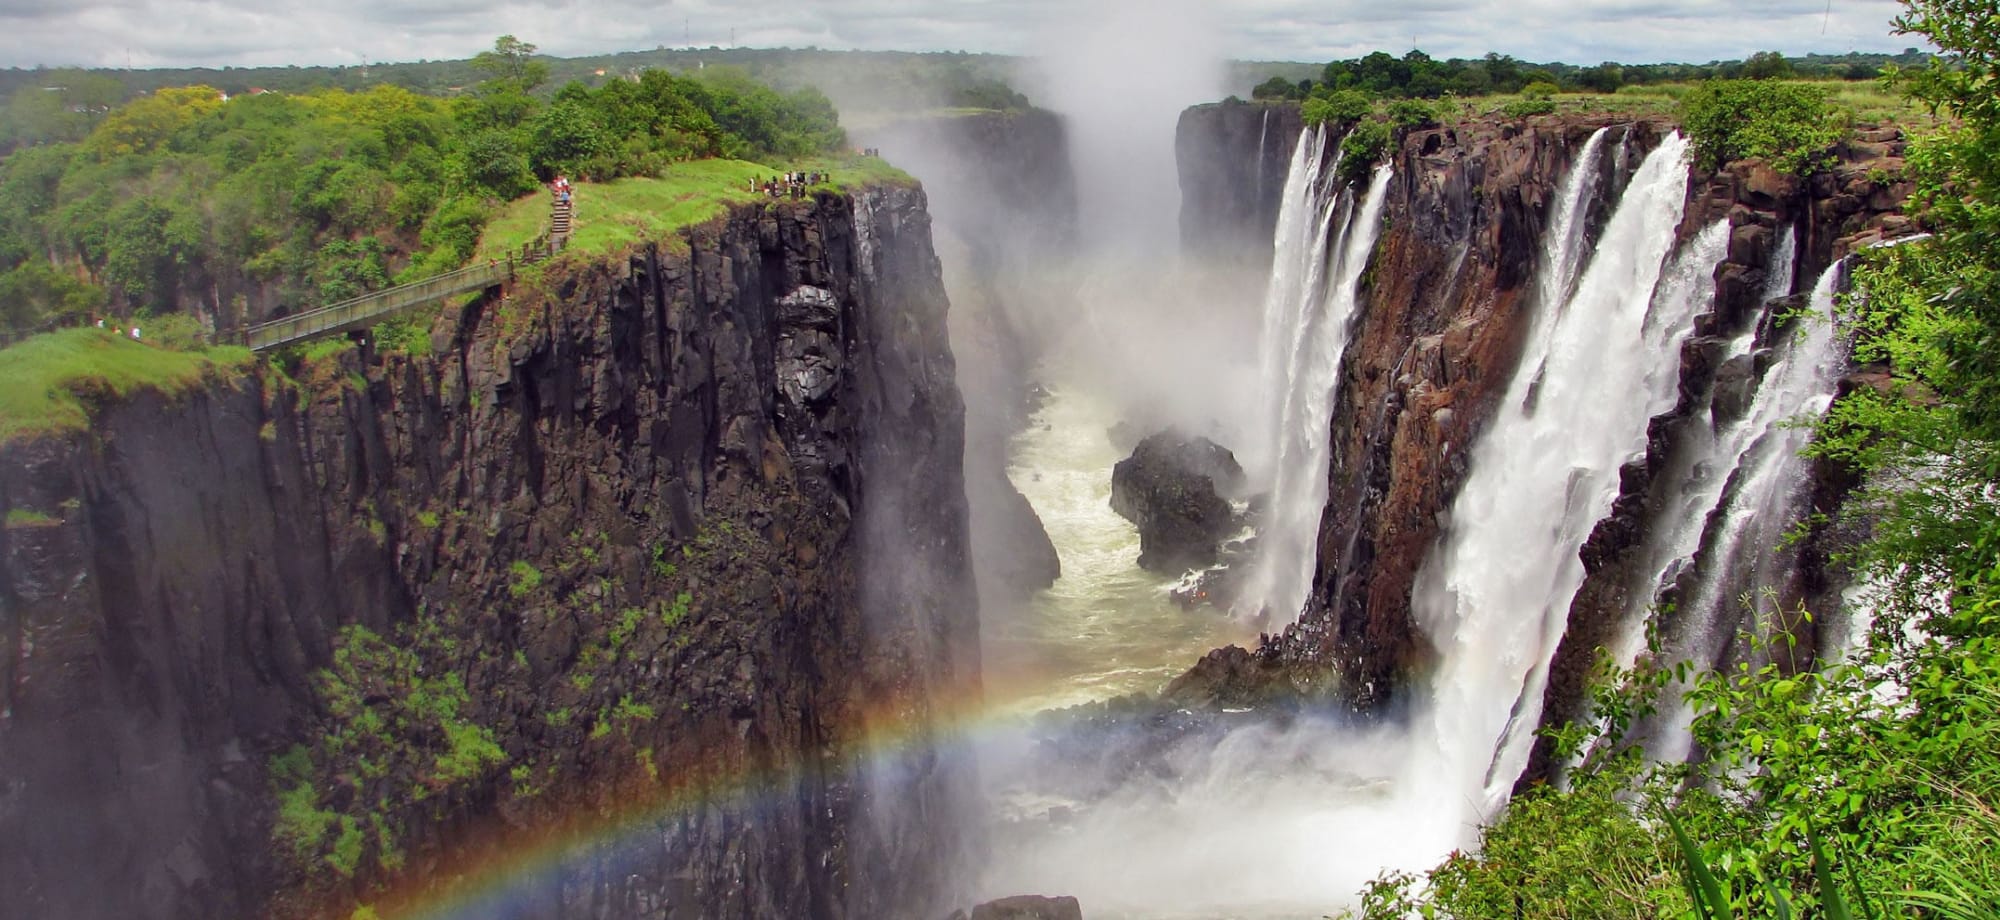 chundukwa_river_lodge_zambia_victoria_falls